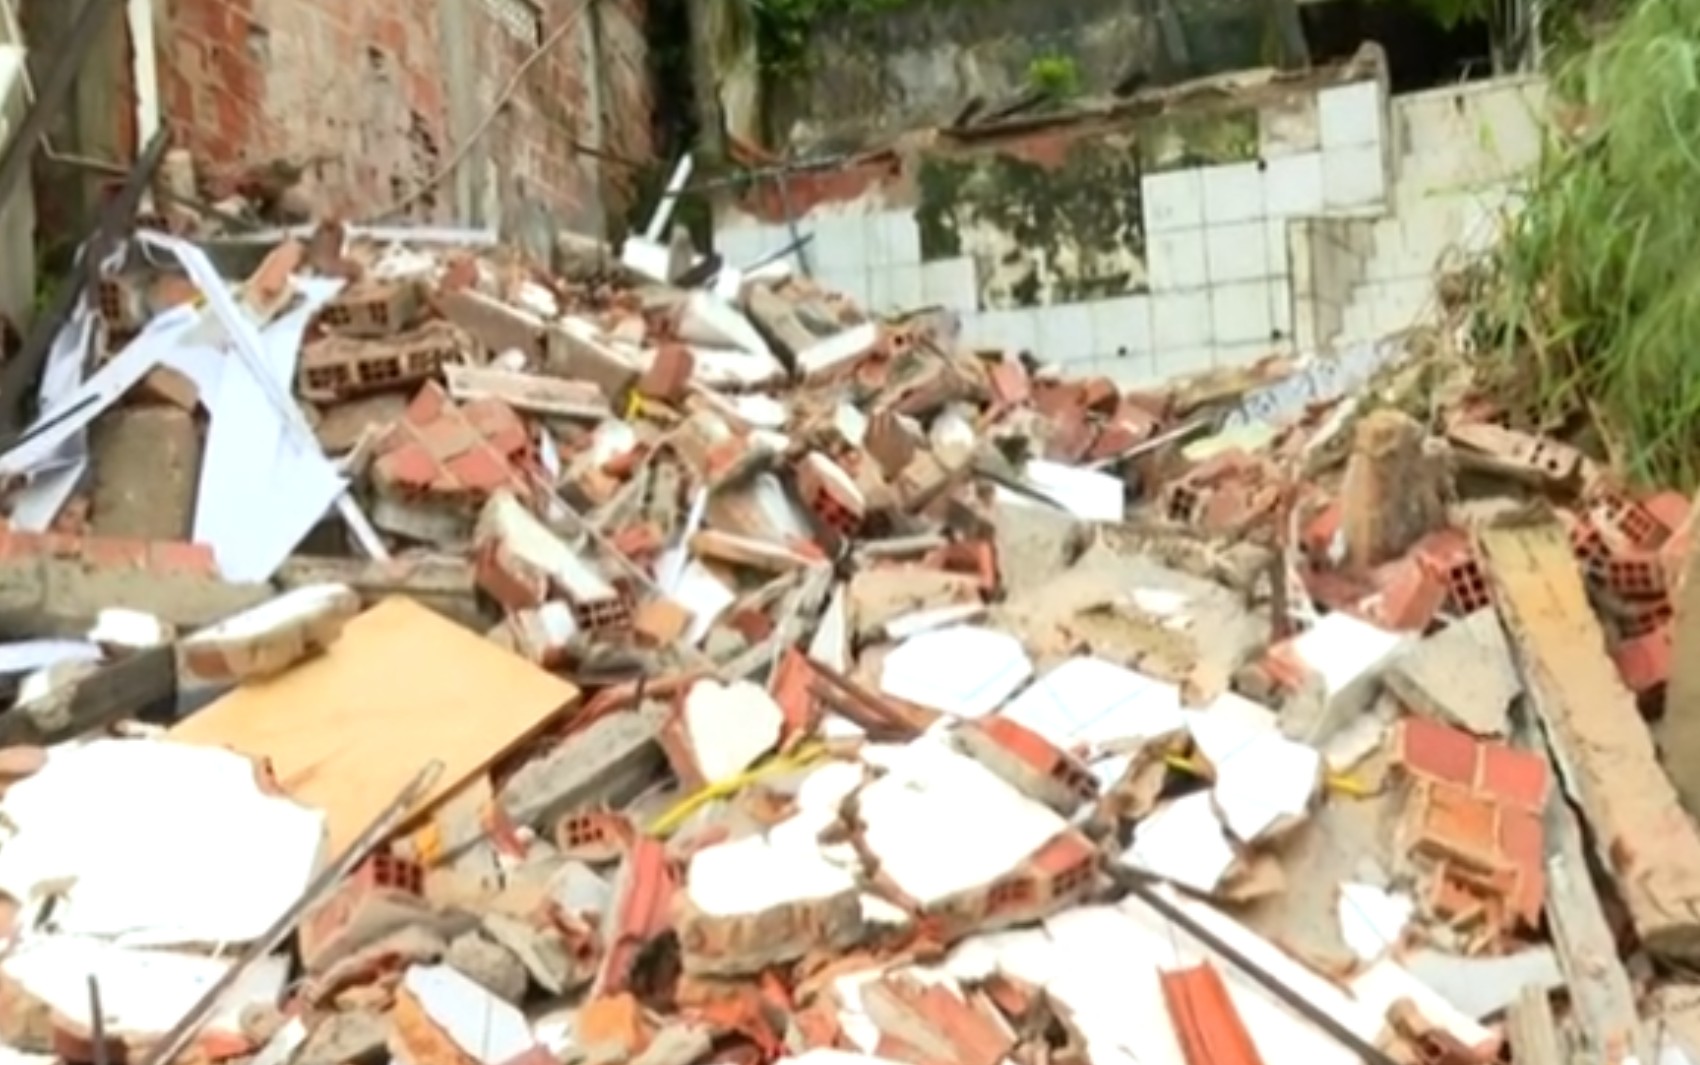 Imóvel desaba e causa estragos nas casas vizinhas em bairro de Salvador 